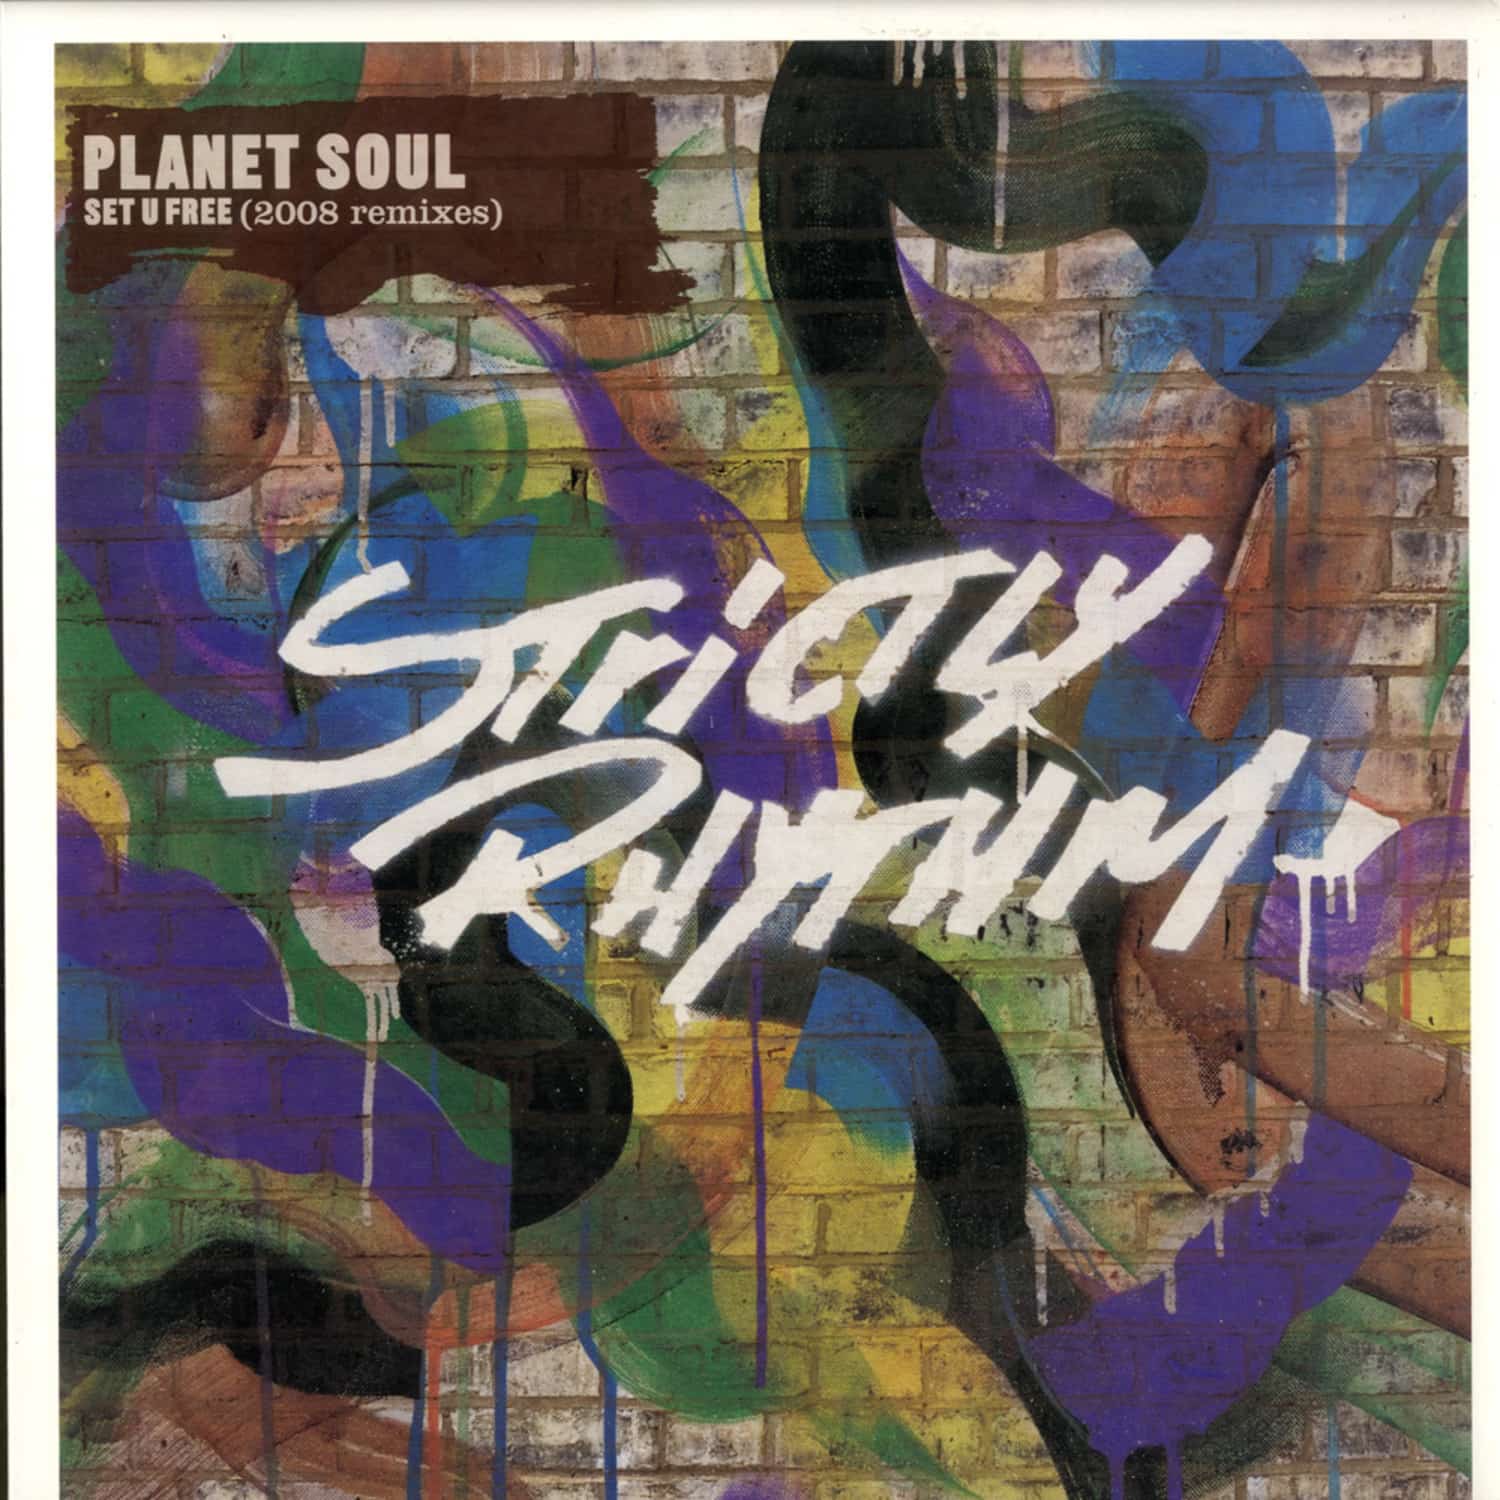 Planet Soul - SET U FREE 